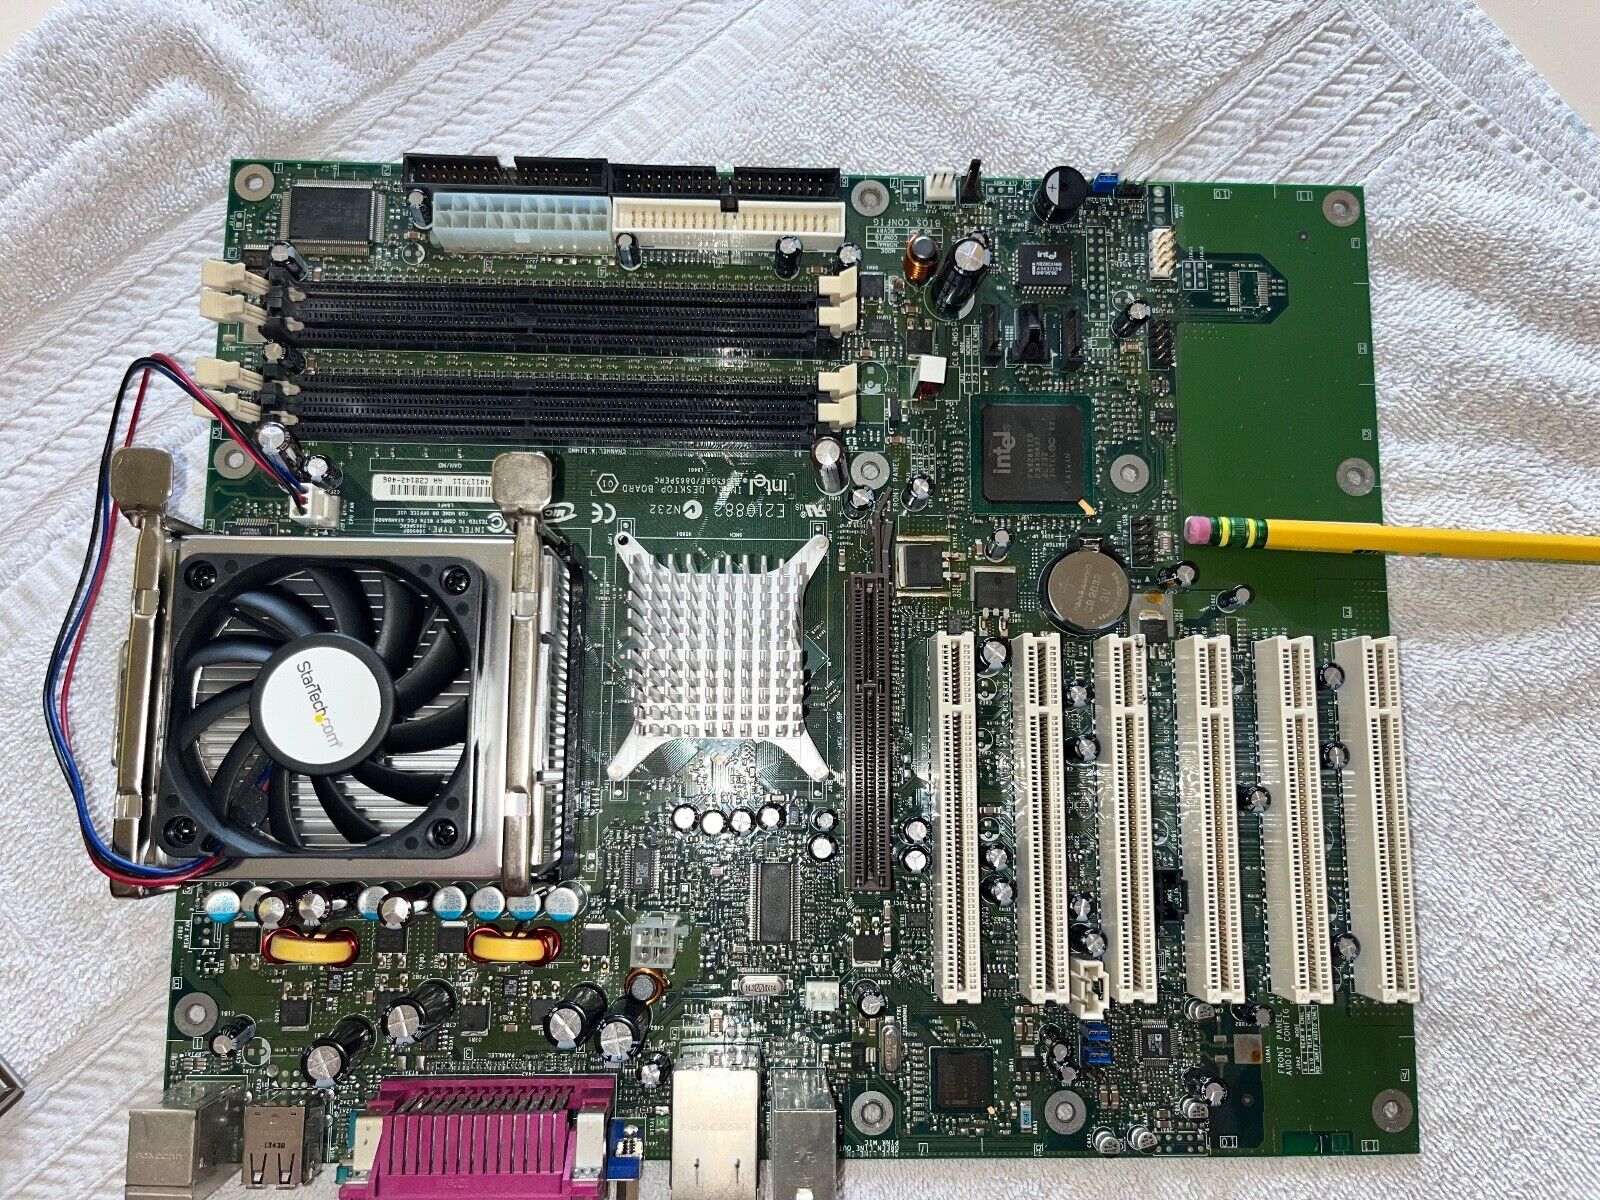 Intel E210882 D865GBF/D865PERC Pentium 4 Server Motherboard